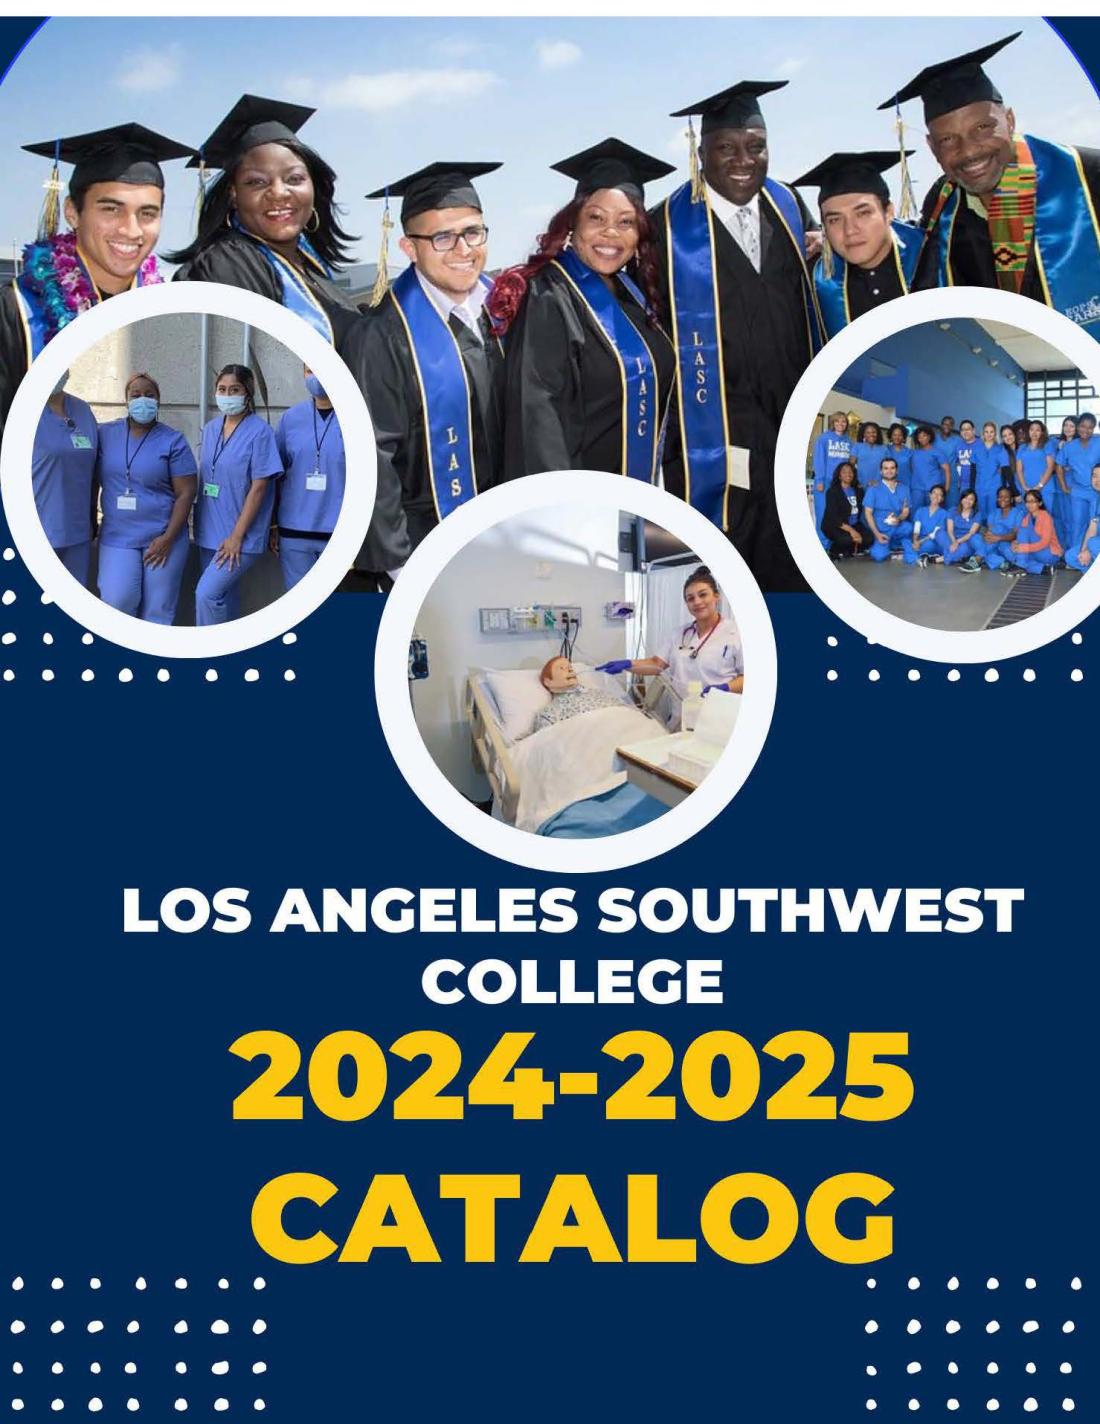 LASC 2024-2025 College Catalog Cover